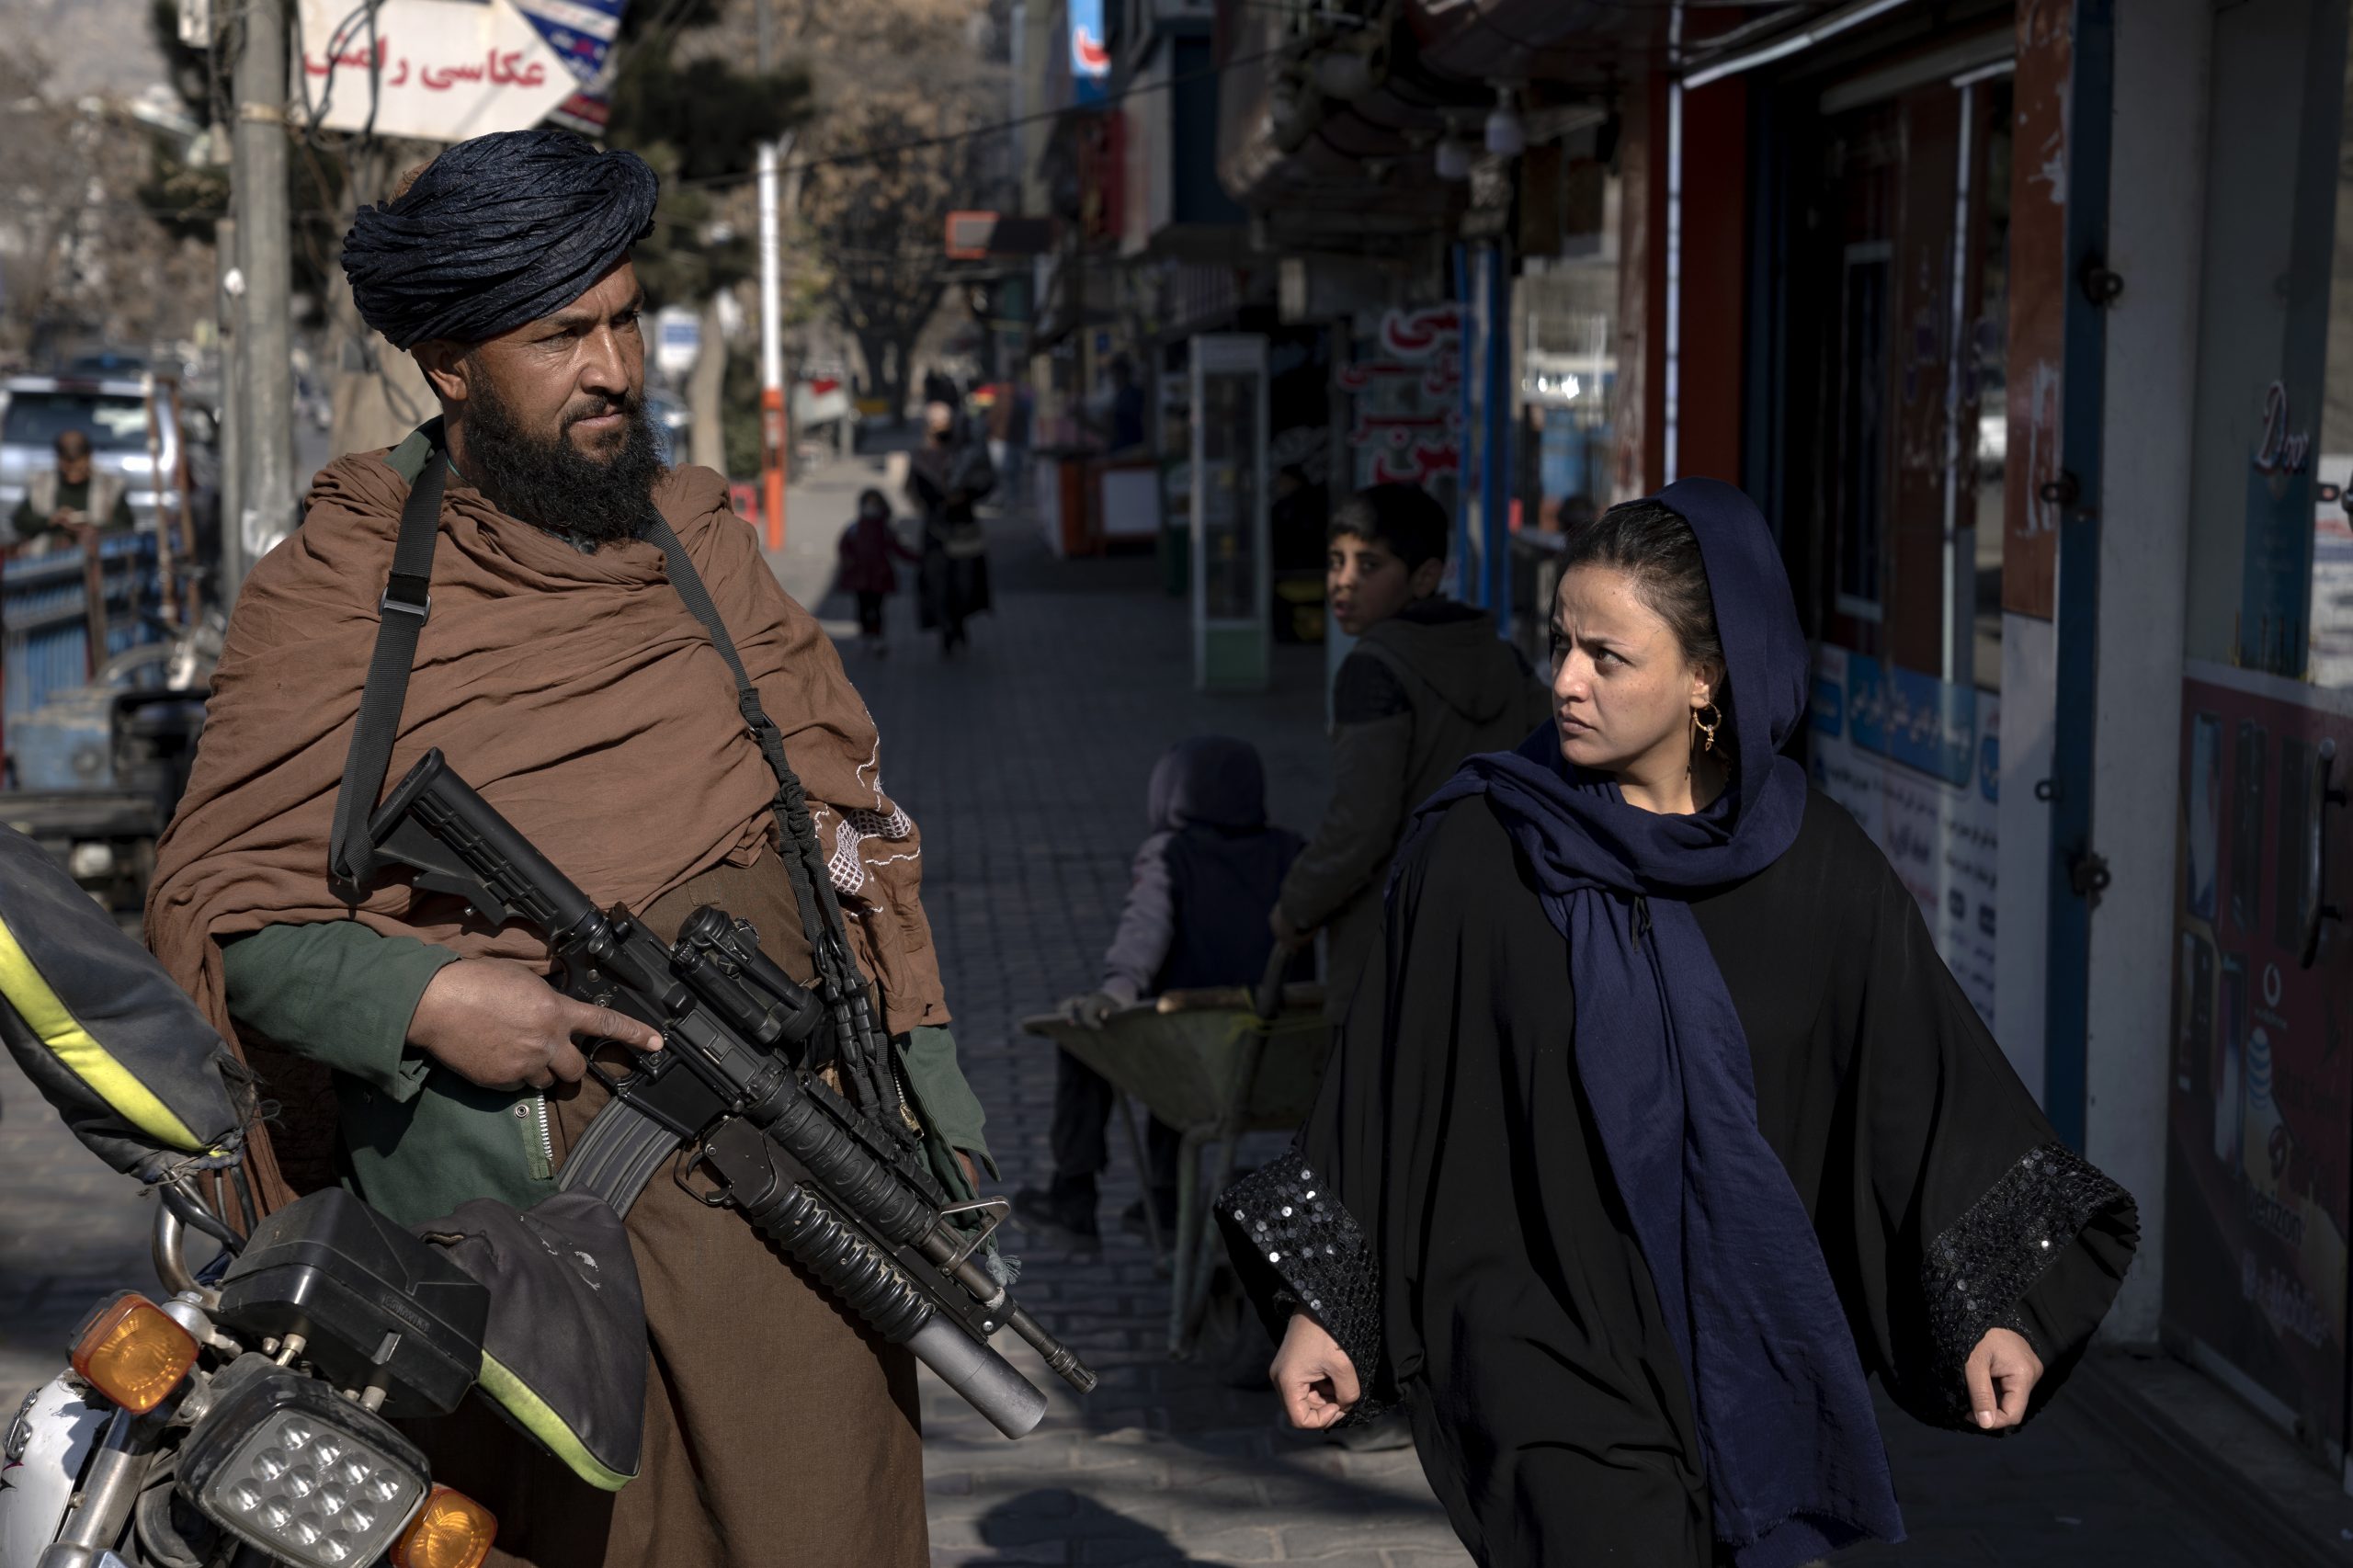 塔利班禁聘女员工 再有两外国救援组织暂停在阿富汗任务